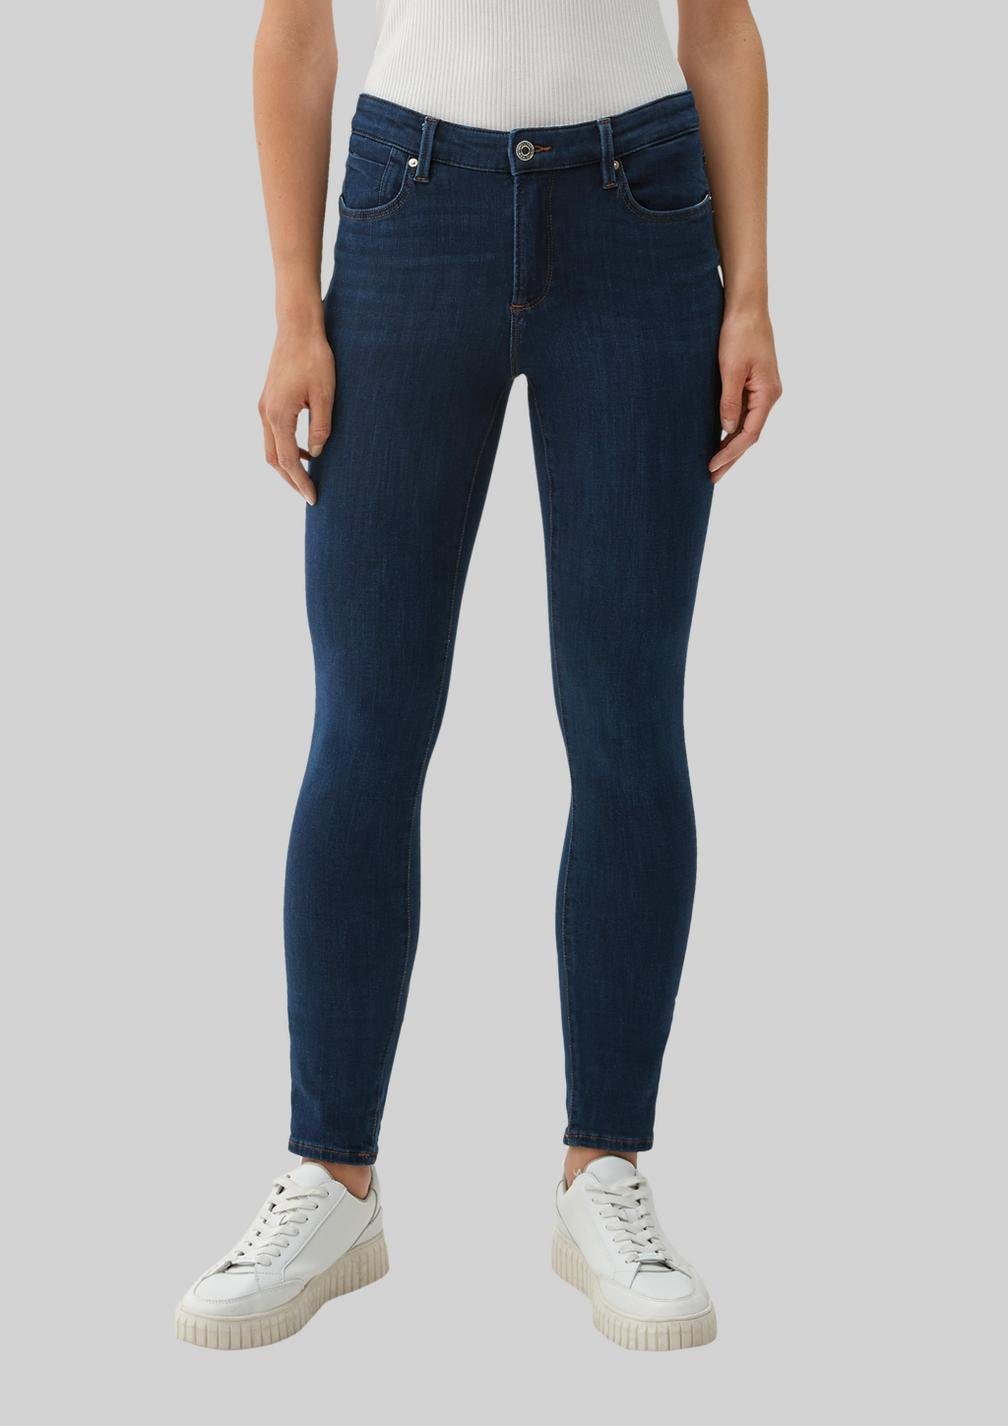 mit klassischer Skinny-fit-Jeans Jeans Fit Skinny in IZABELL s.Oliver Taschen 5-Pocket-Form